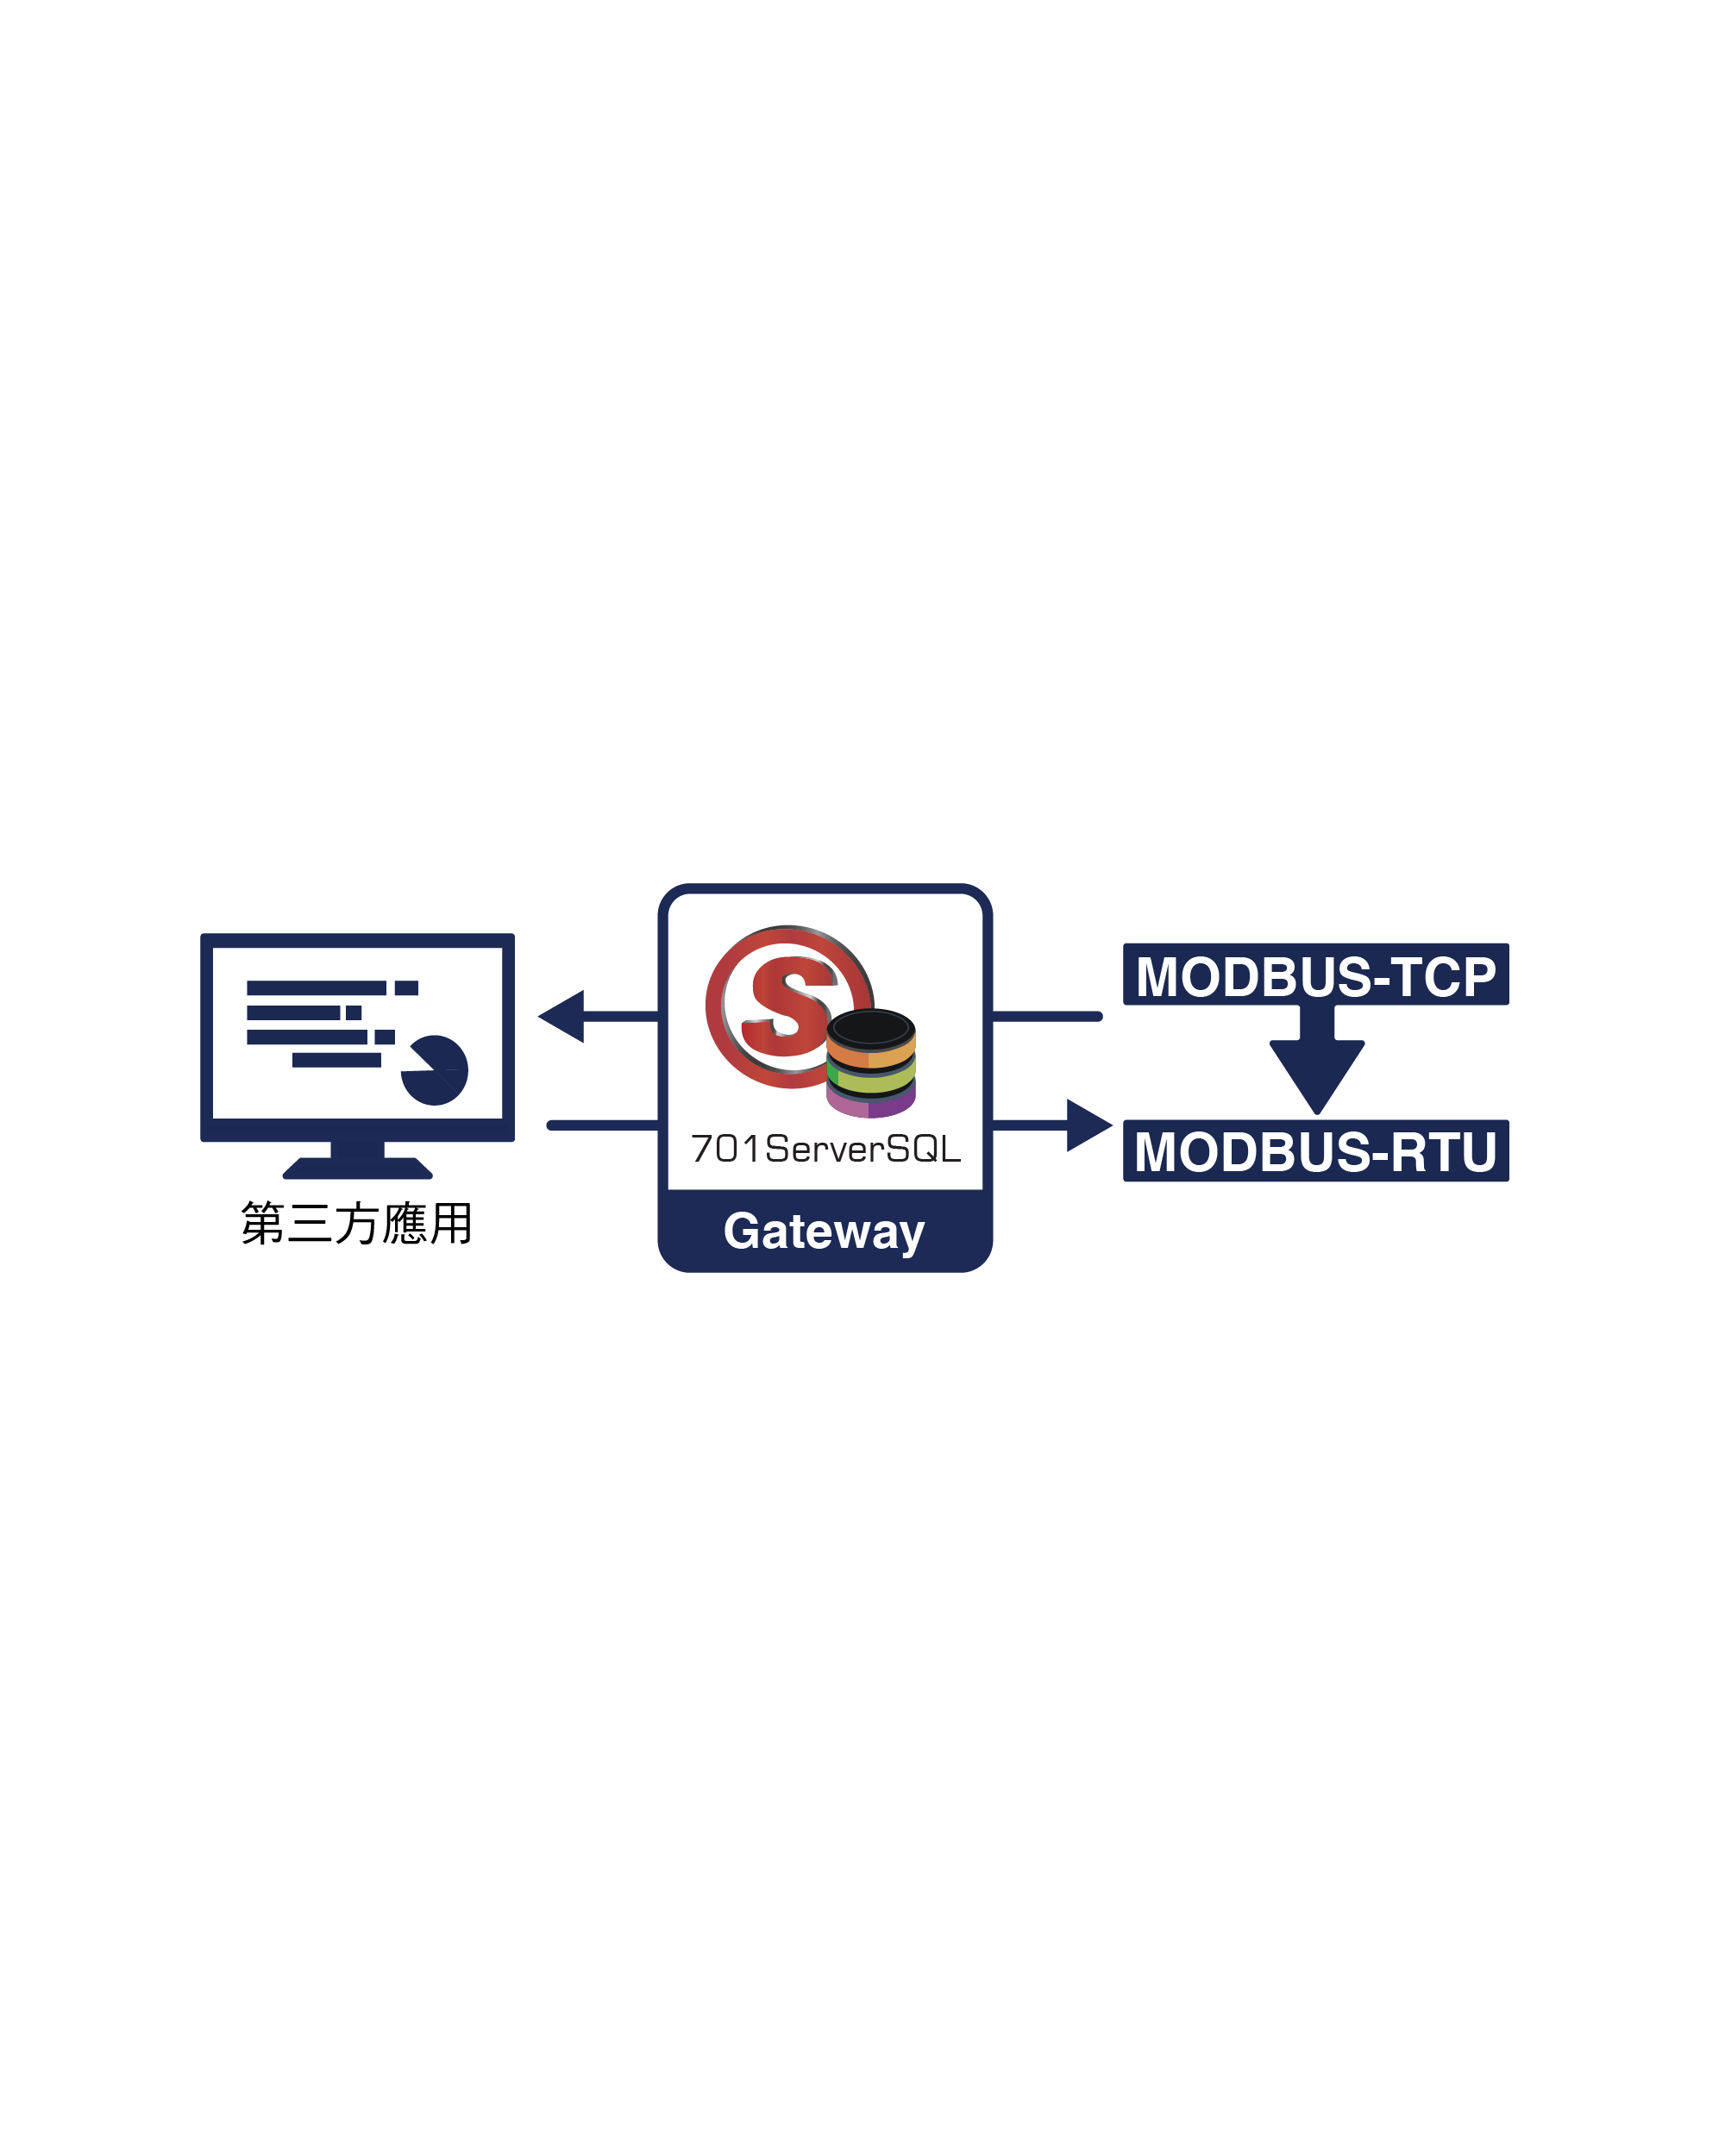 整合方案-Modbus-TCP to Modbus-RTU(圖)